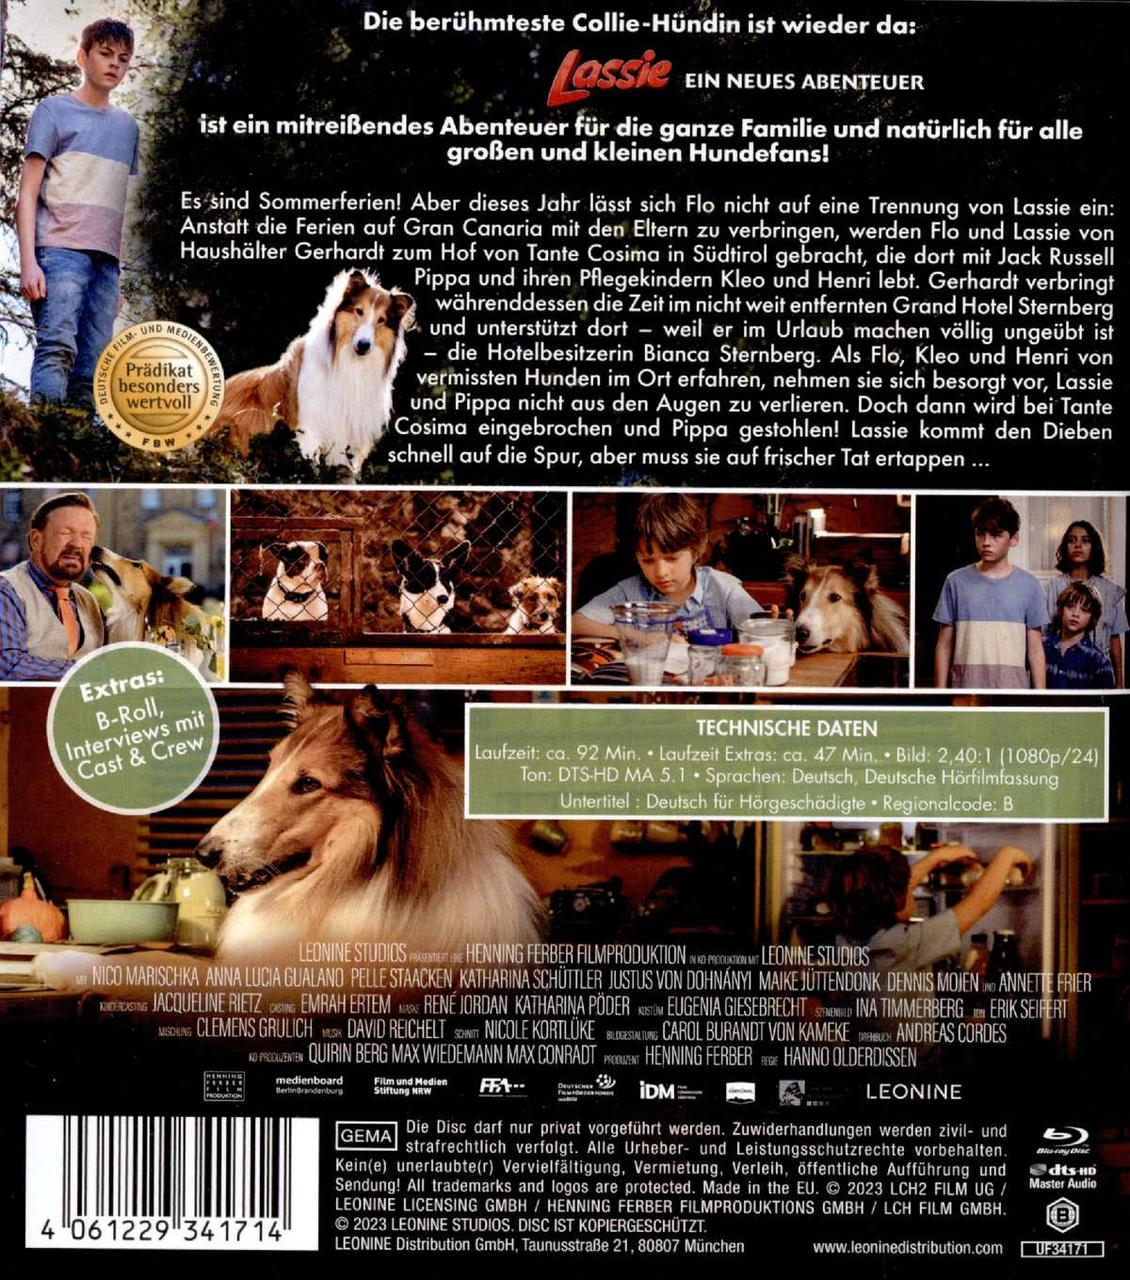 Abenteuer Ein neues - Blu-ray Lassie